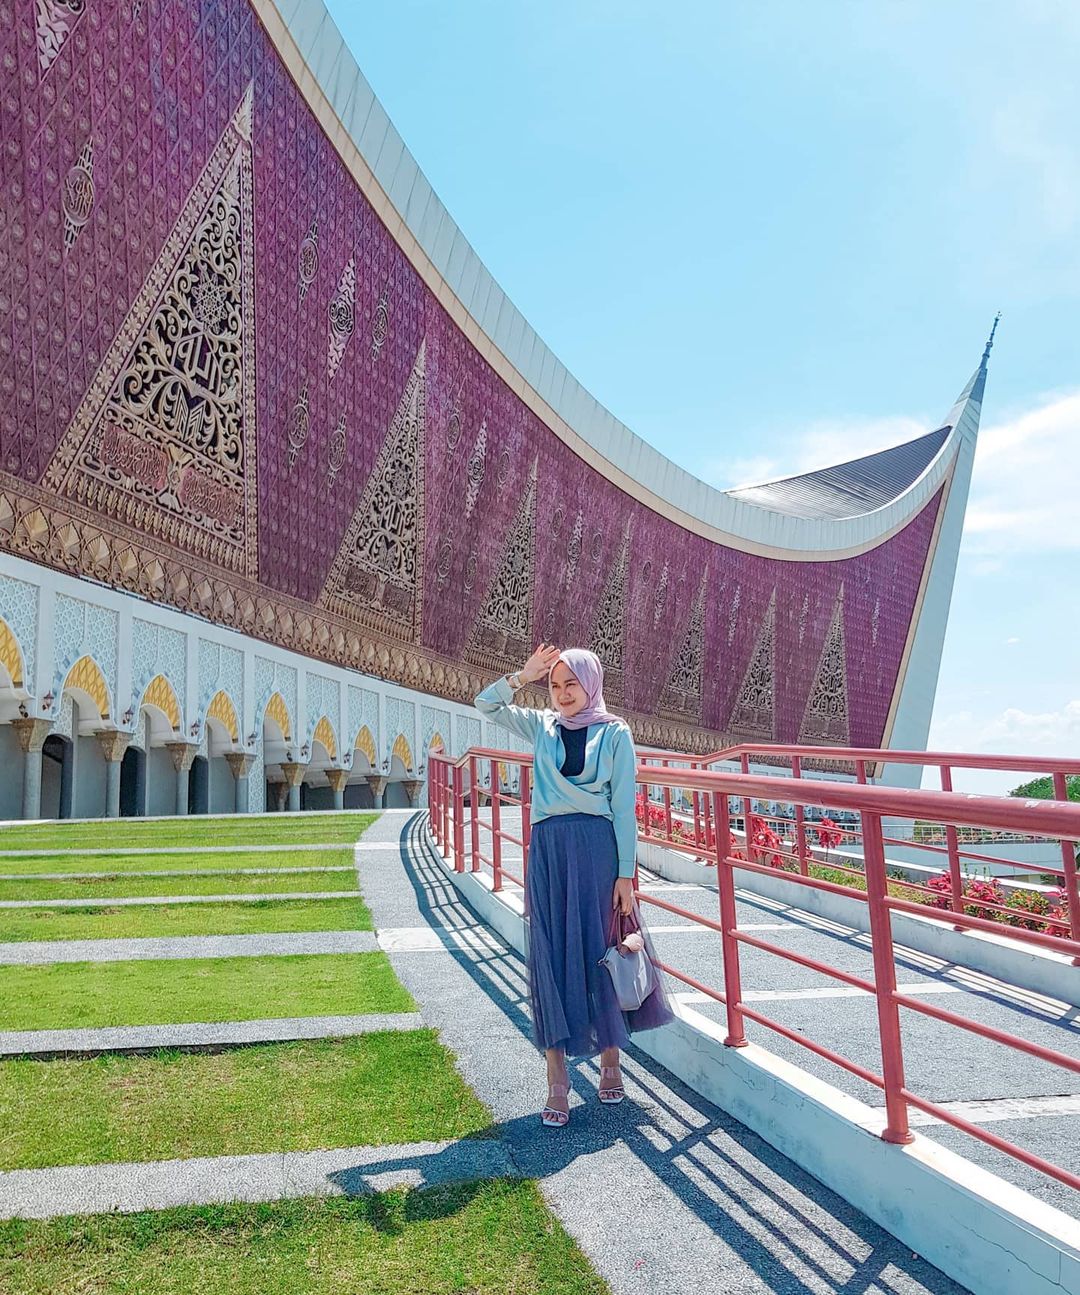 grand mosque of west Sumatra facade